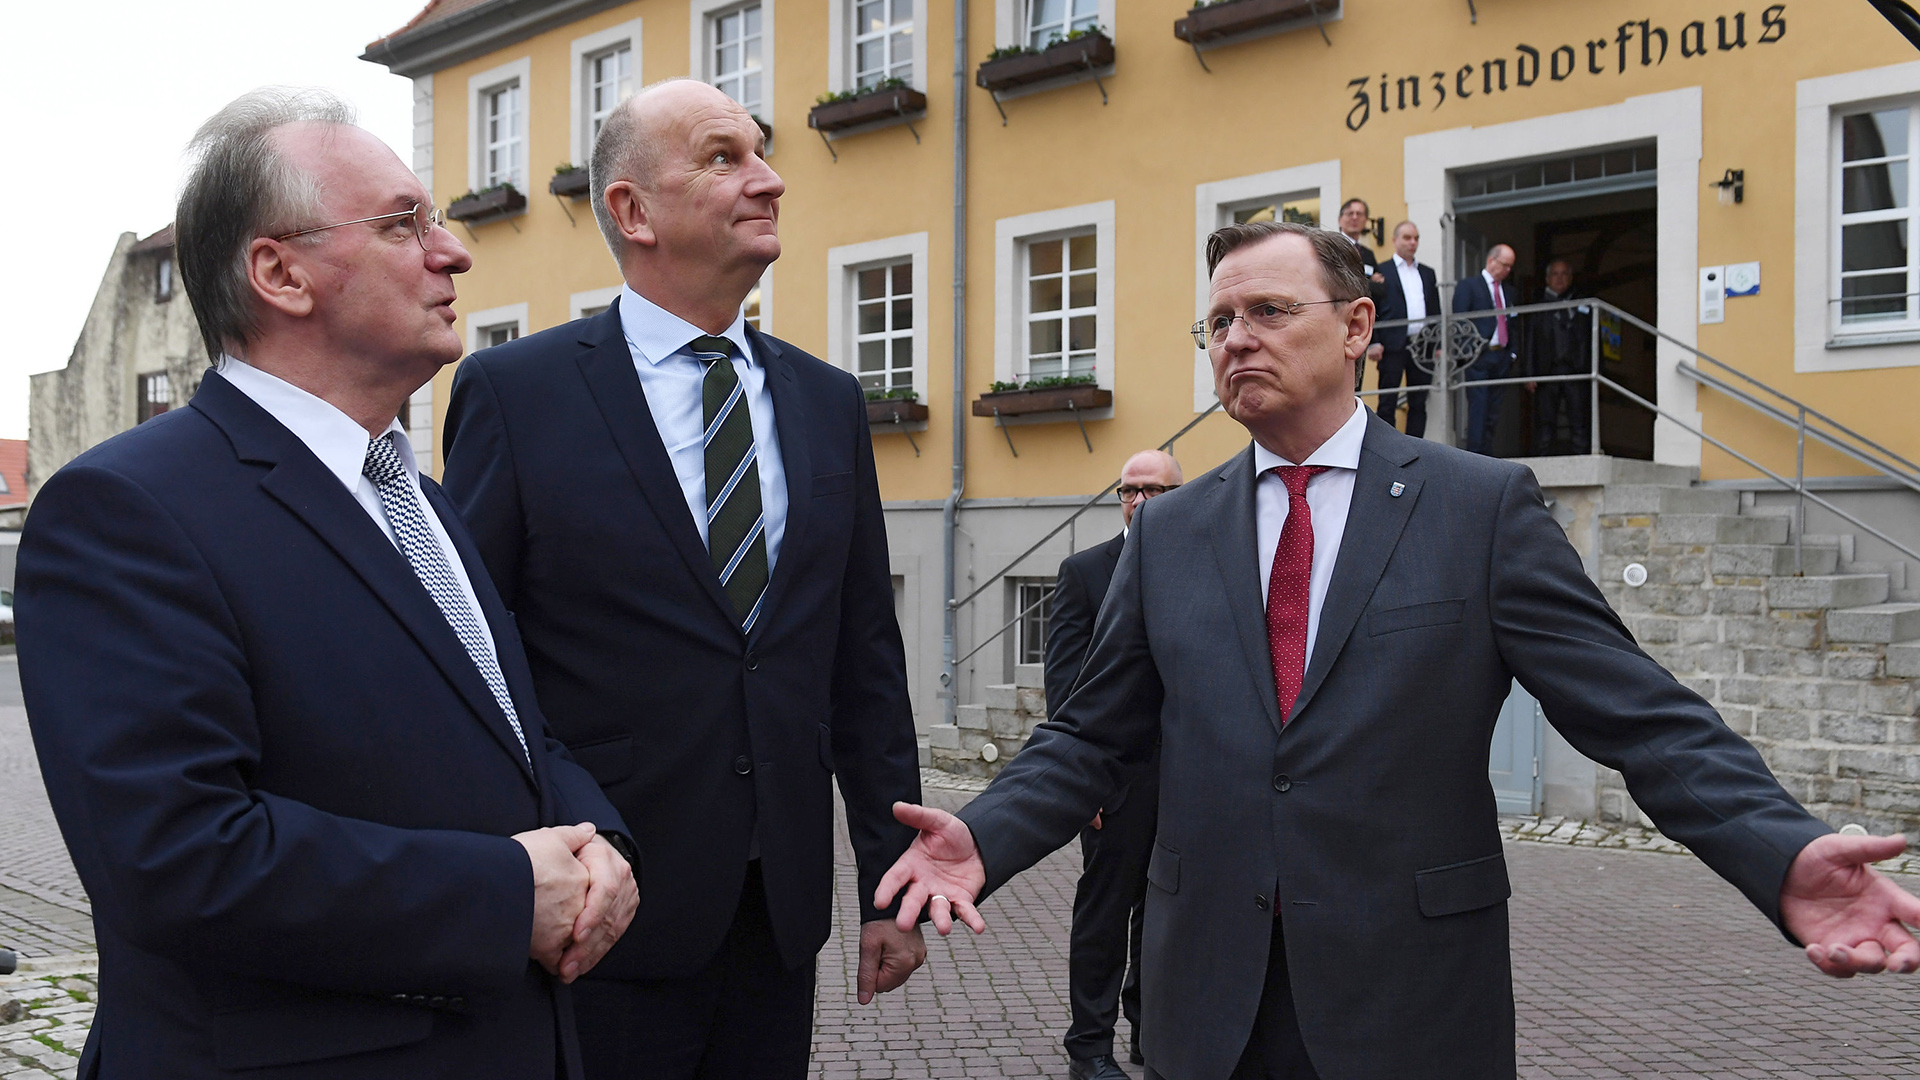 Reiner Haseloff (CDU, l-r), Ministerpräsident von Sachsen-Anhalt, Dietmar Woidke (SPD), Ministerpräsident von Brandenburg, und Bodo Ramelow (Die Linke), Ministerpräsident von Thüringen. | dpa